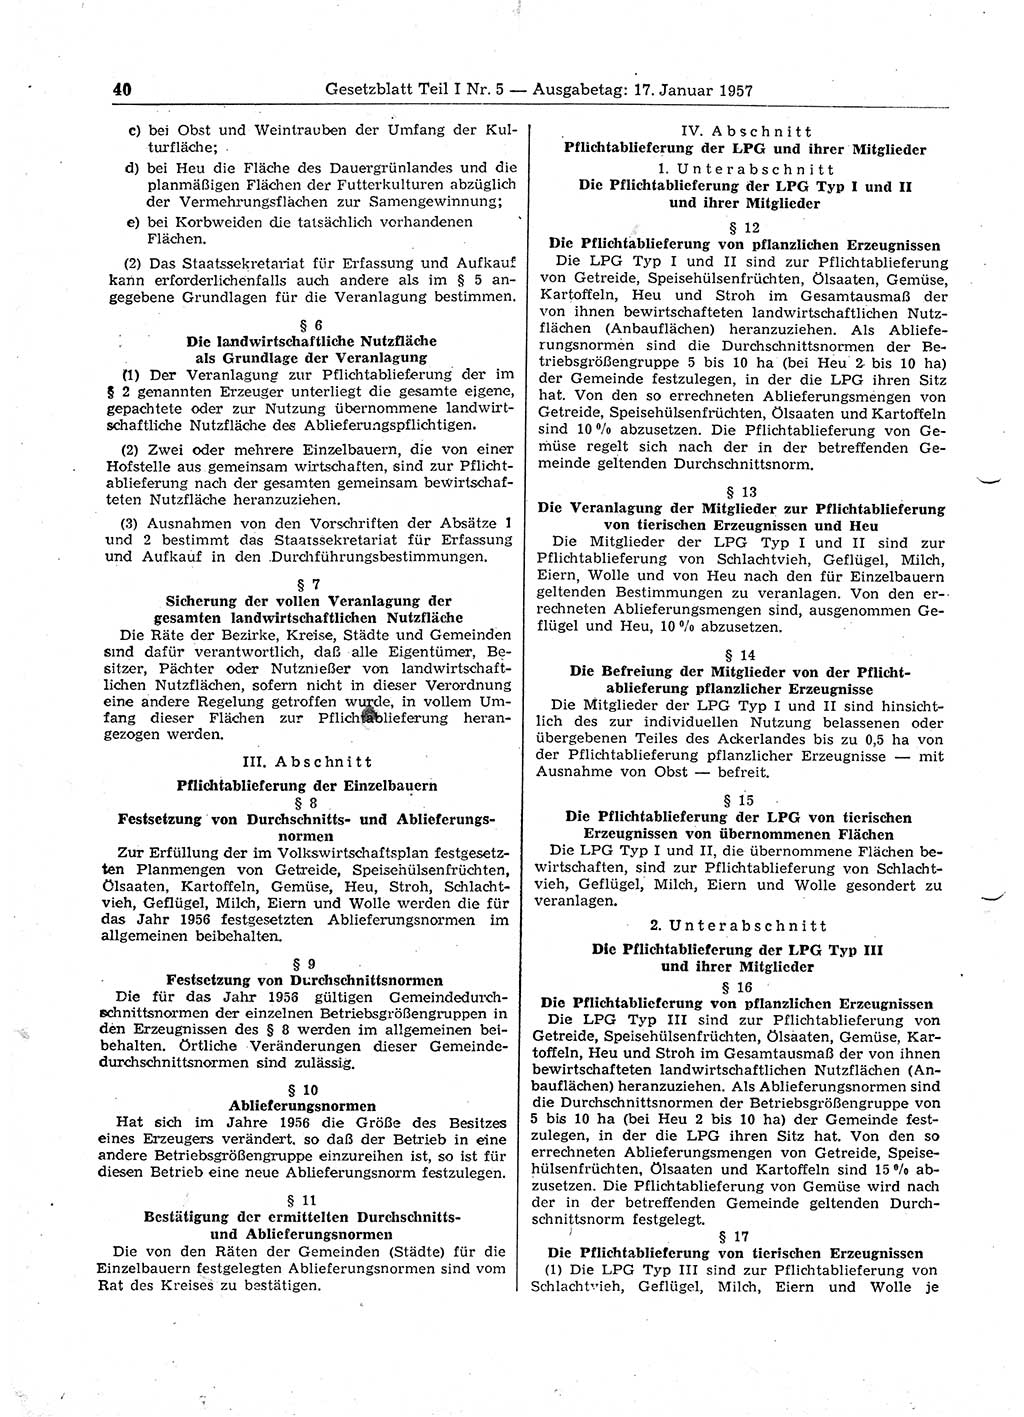 Gesetzblatt (GBl.) der Deutschen Demokratischen Republik (DDR) Teil Ⅰ 1957, Seite 40 (GBl. DDR Ⅰ 1957, S. 40)